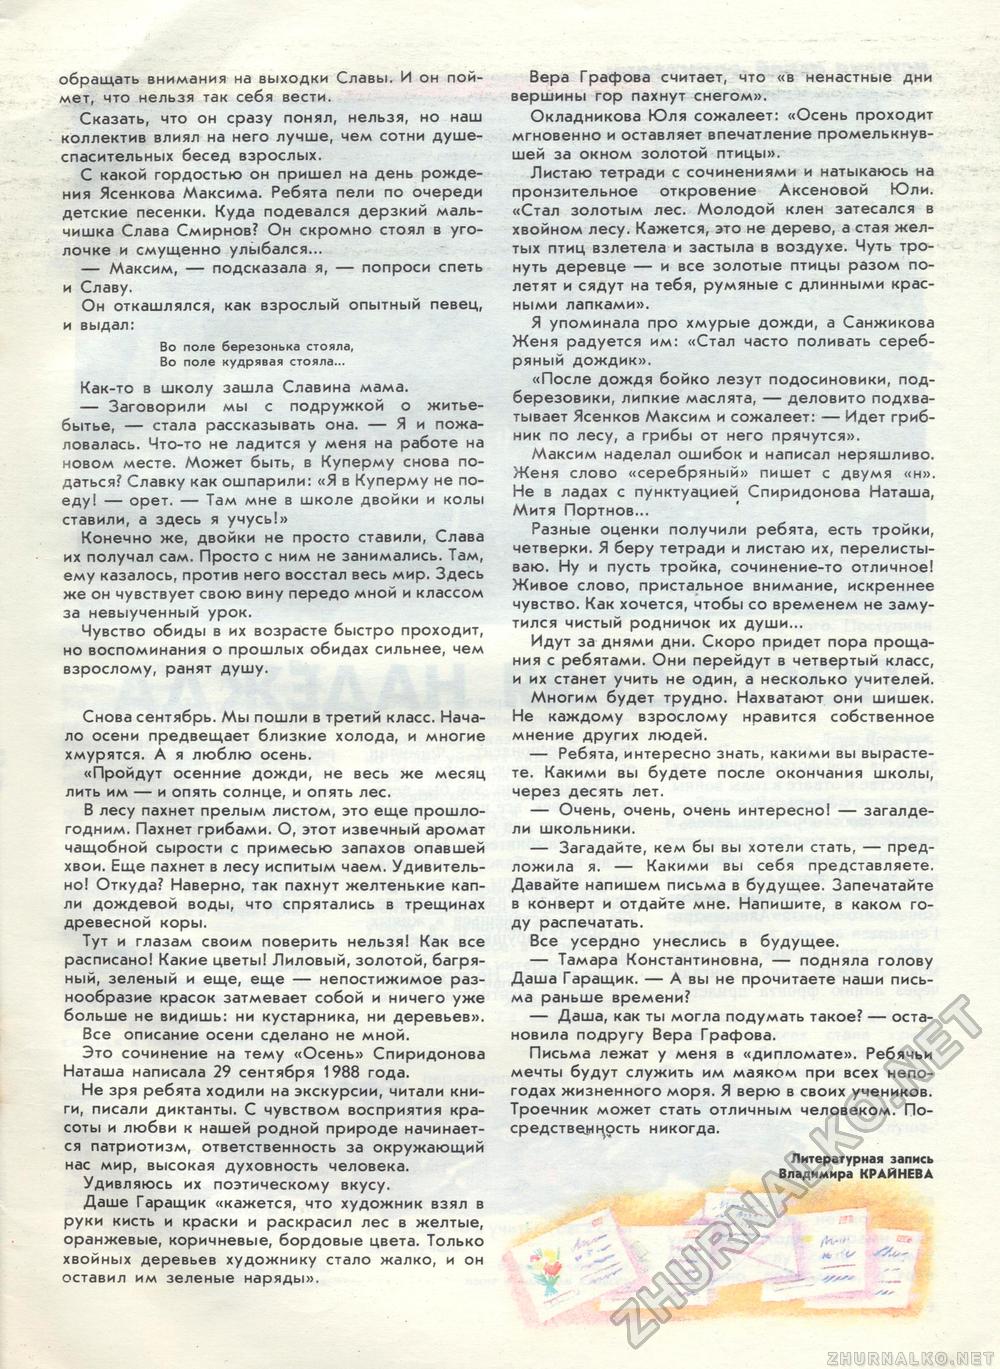  1989-10,  5